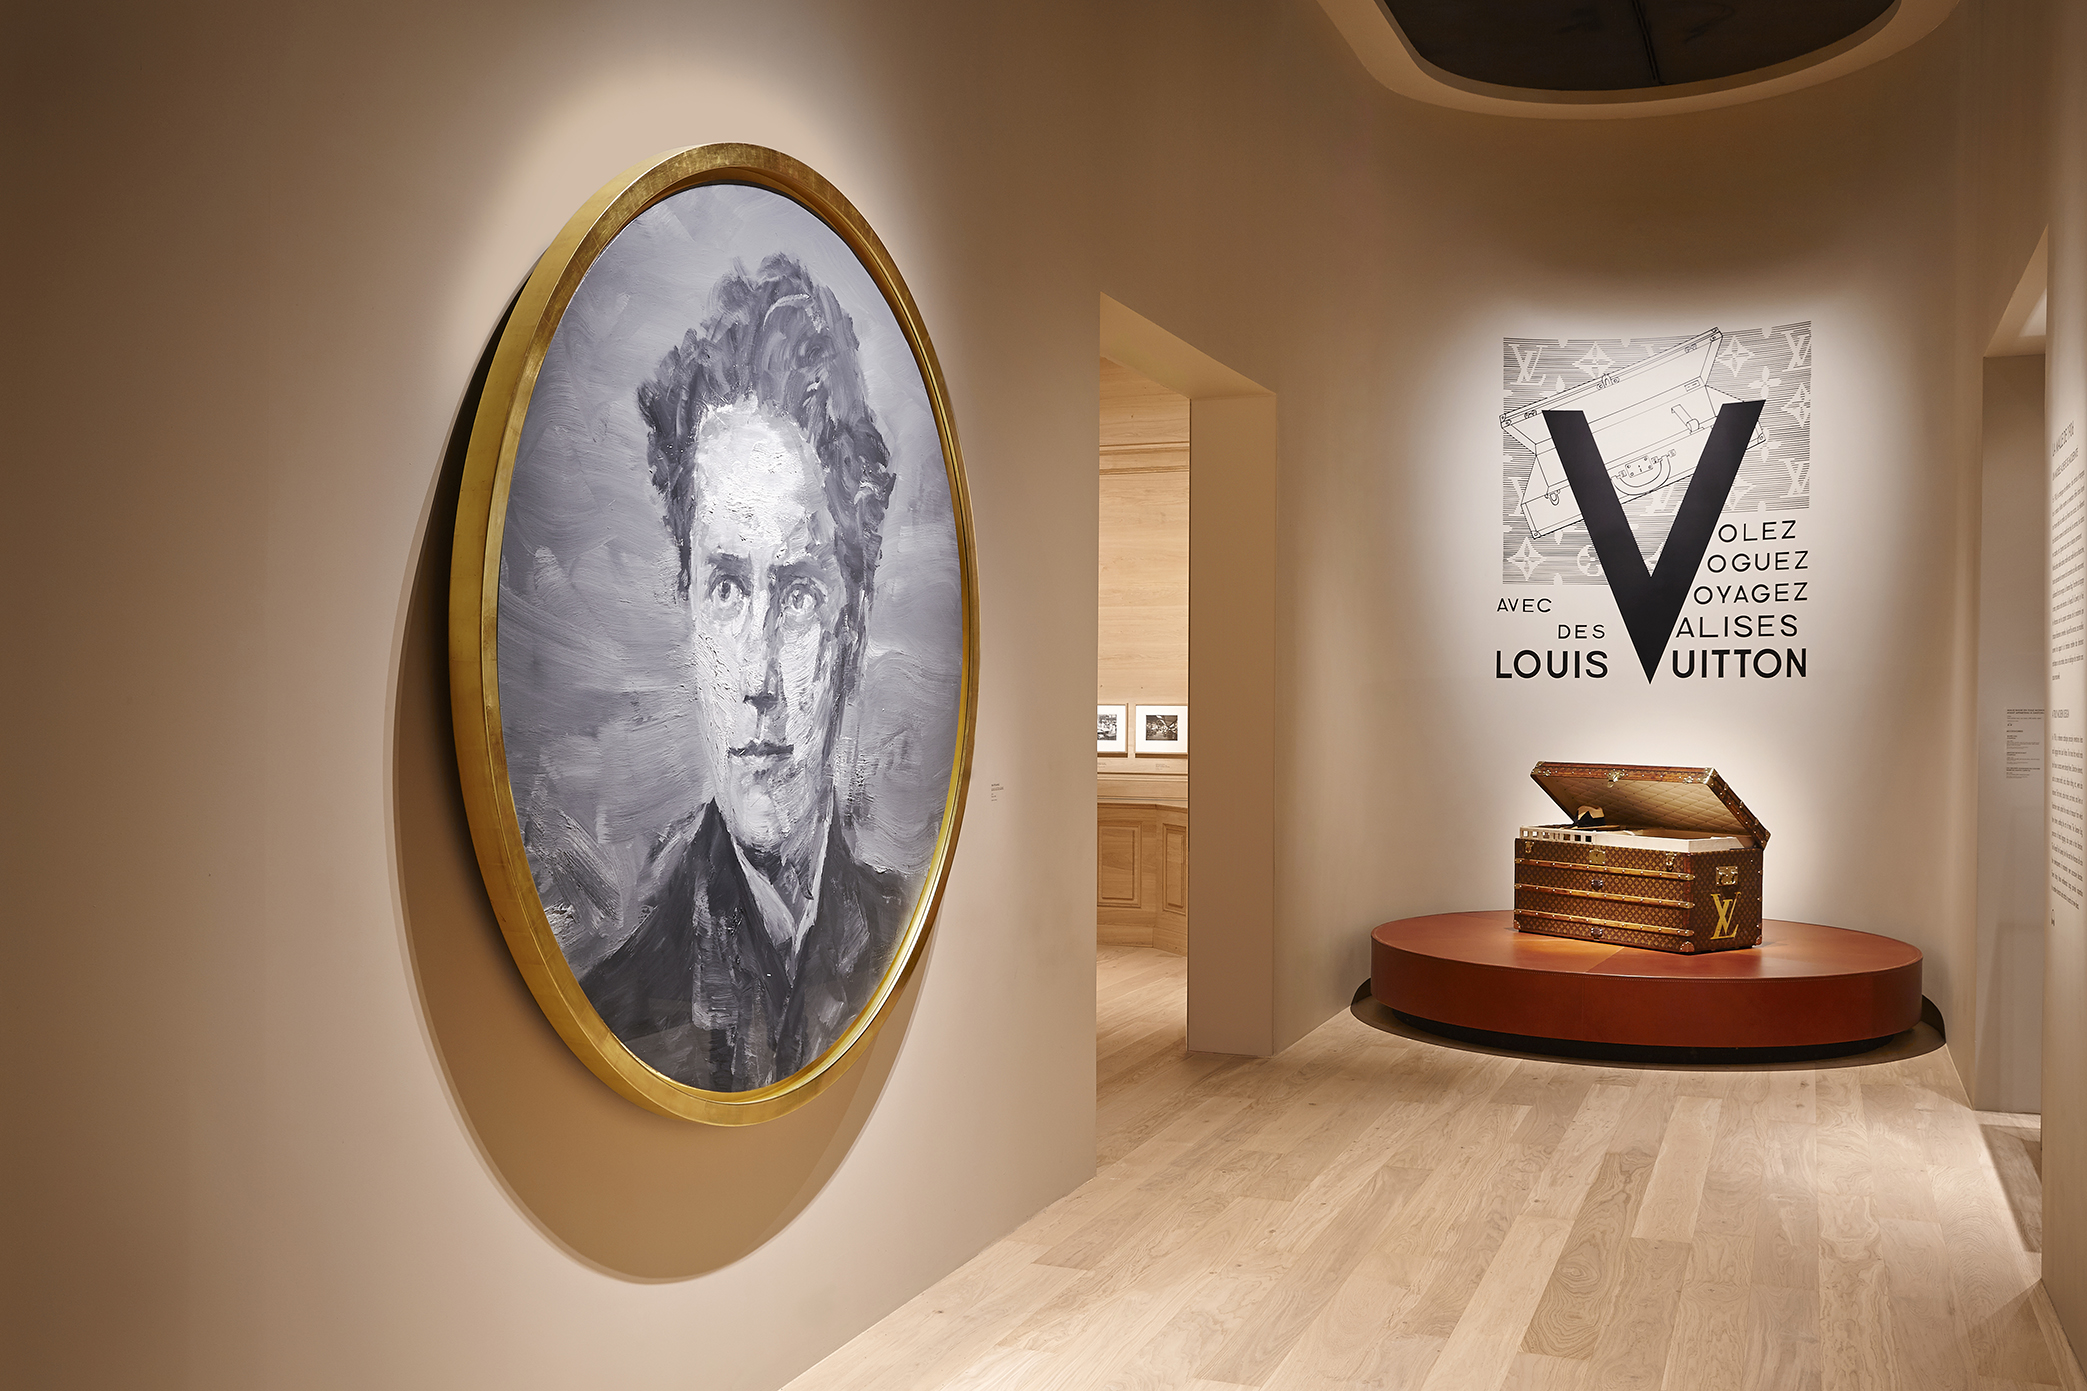 Αποτέλεσμα εικόνας για Louis Vuitton Vole voyager